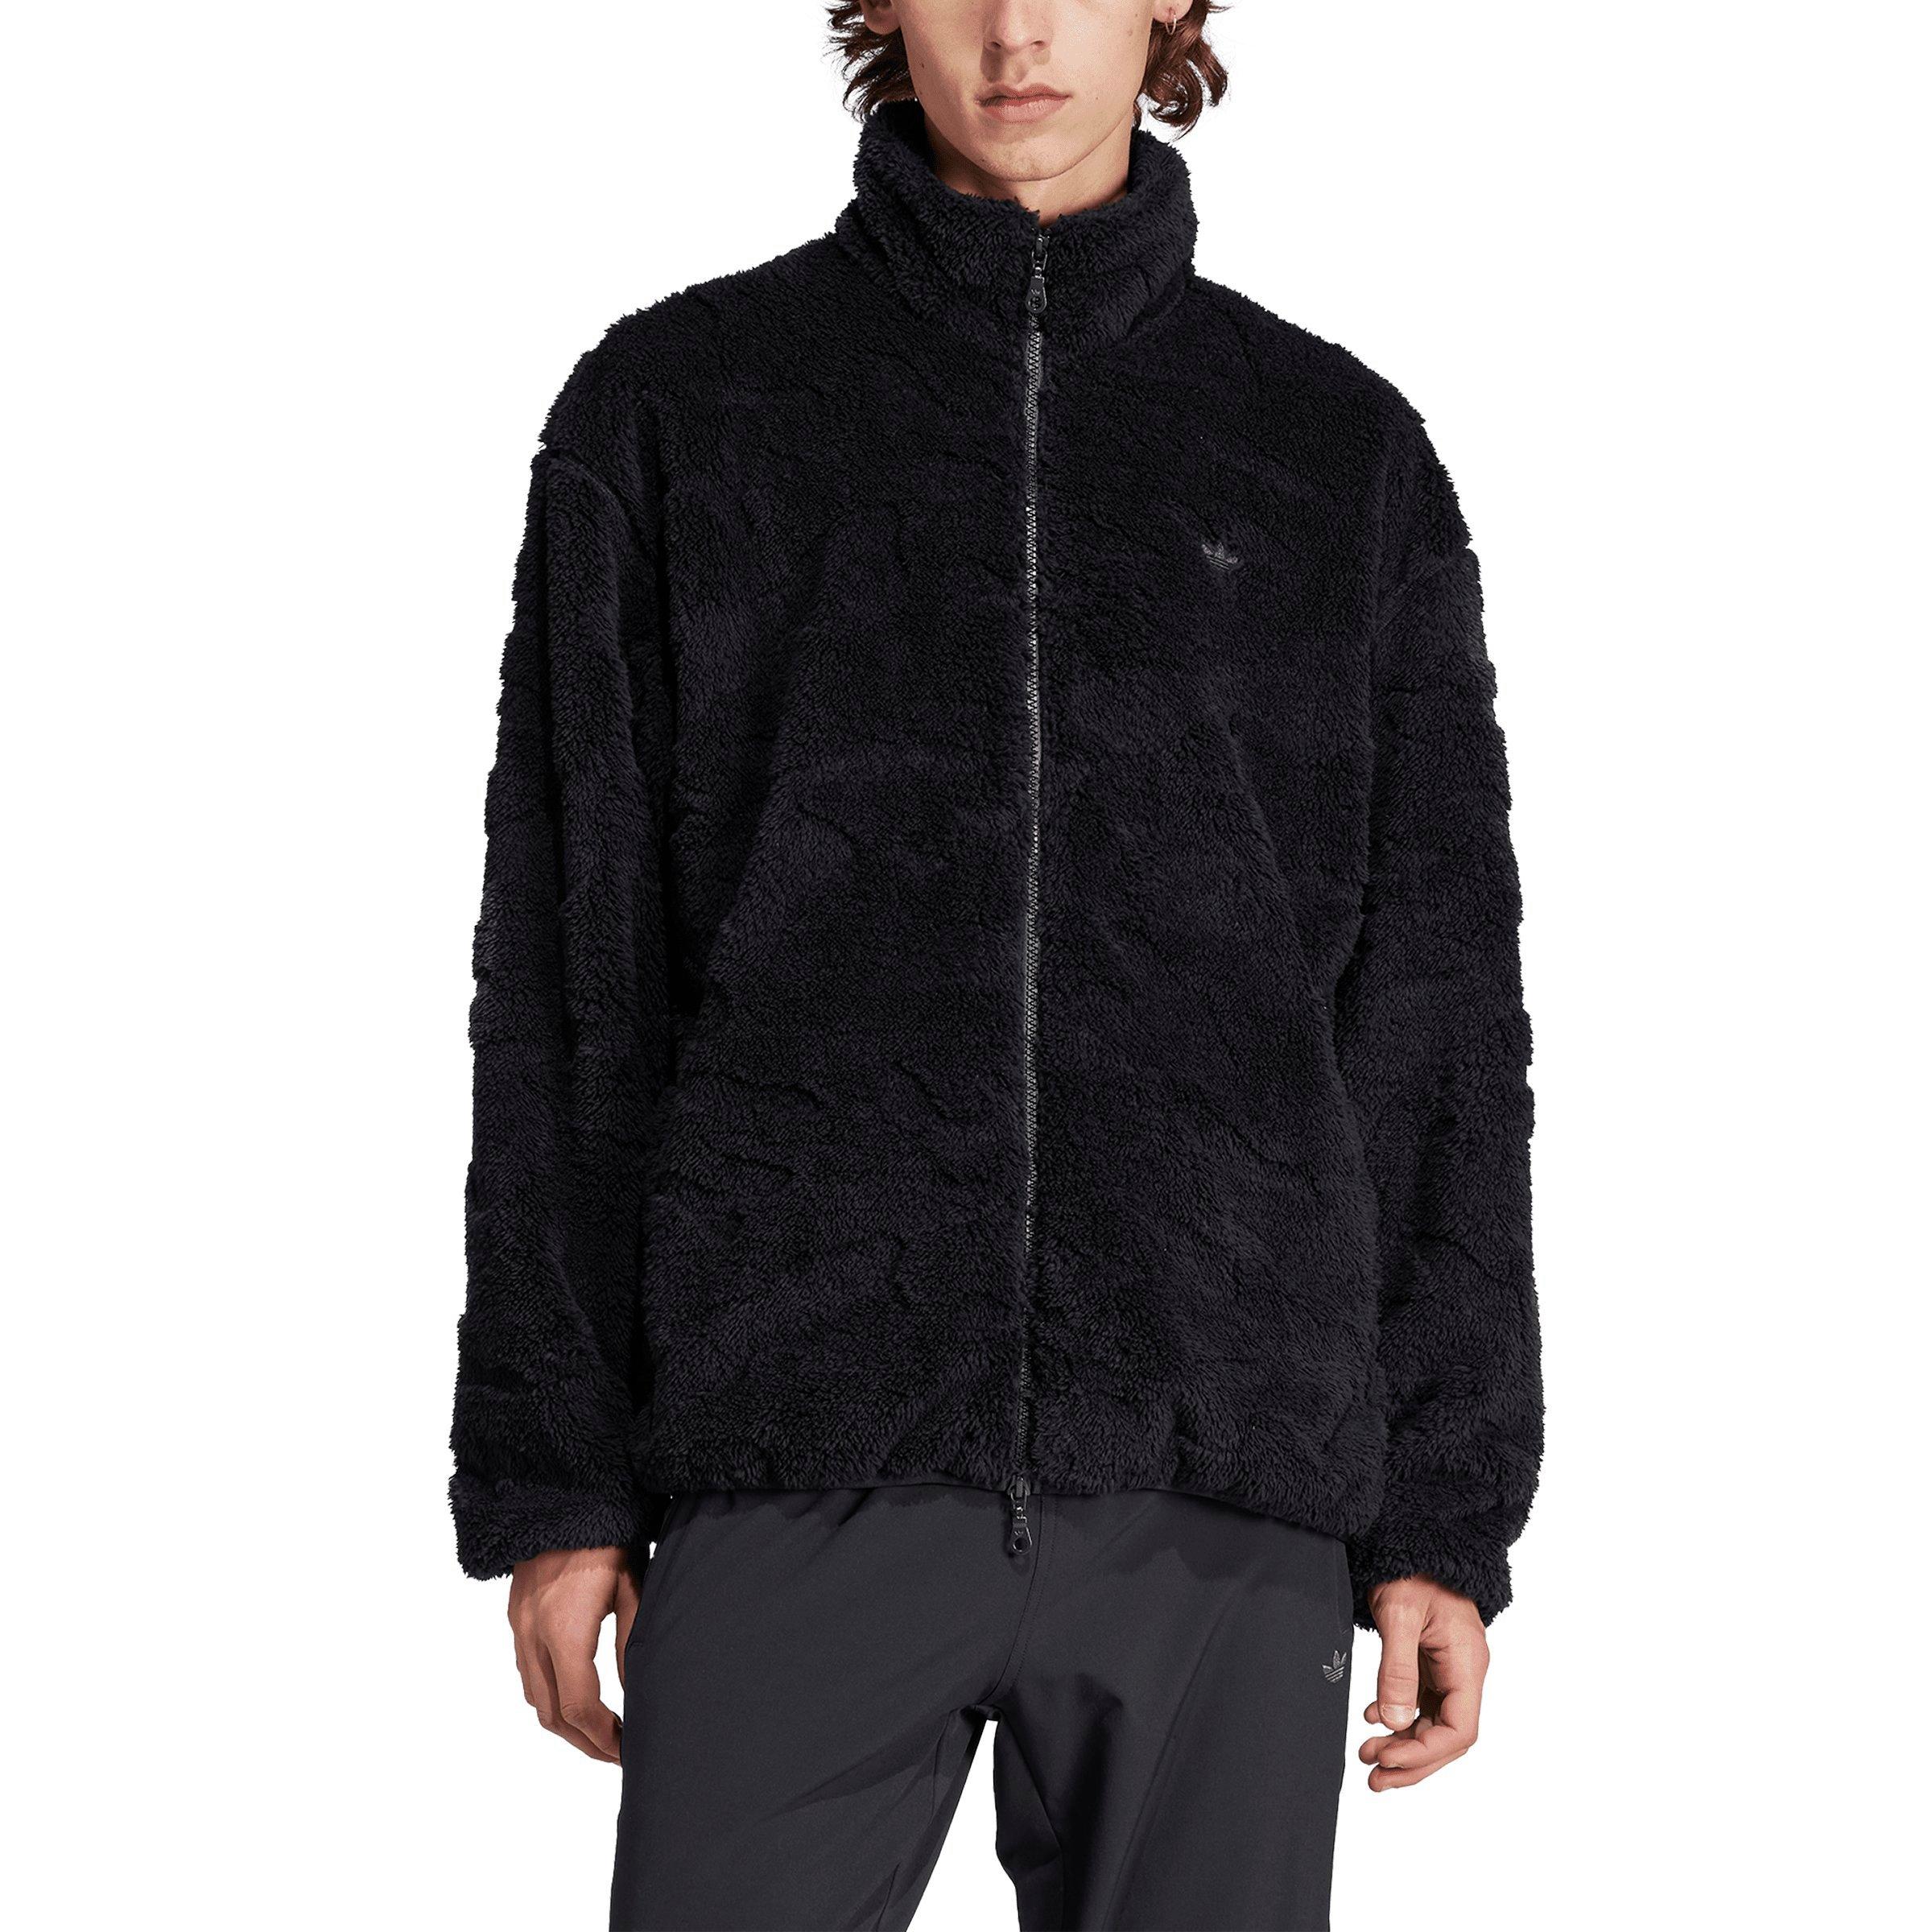 adidas Originals Men's Graphics Camo Reversible Fleece Jacket